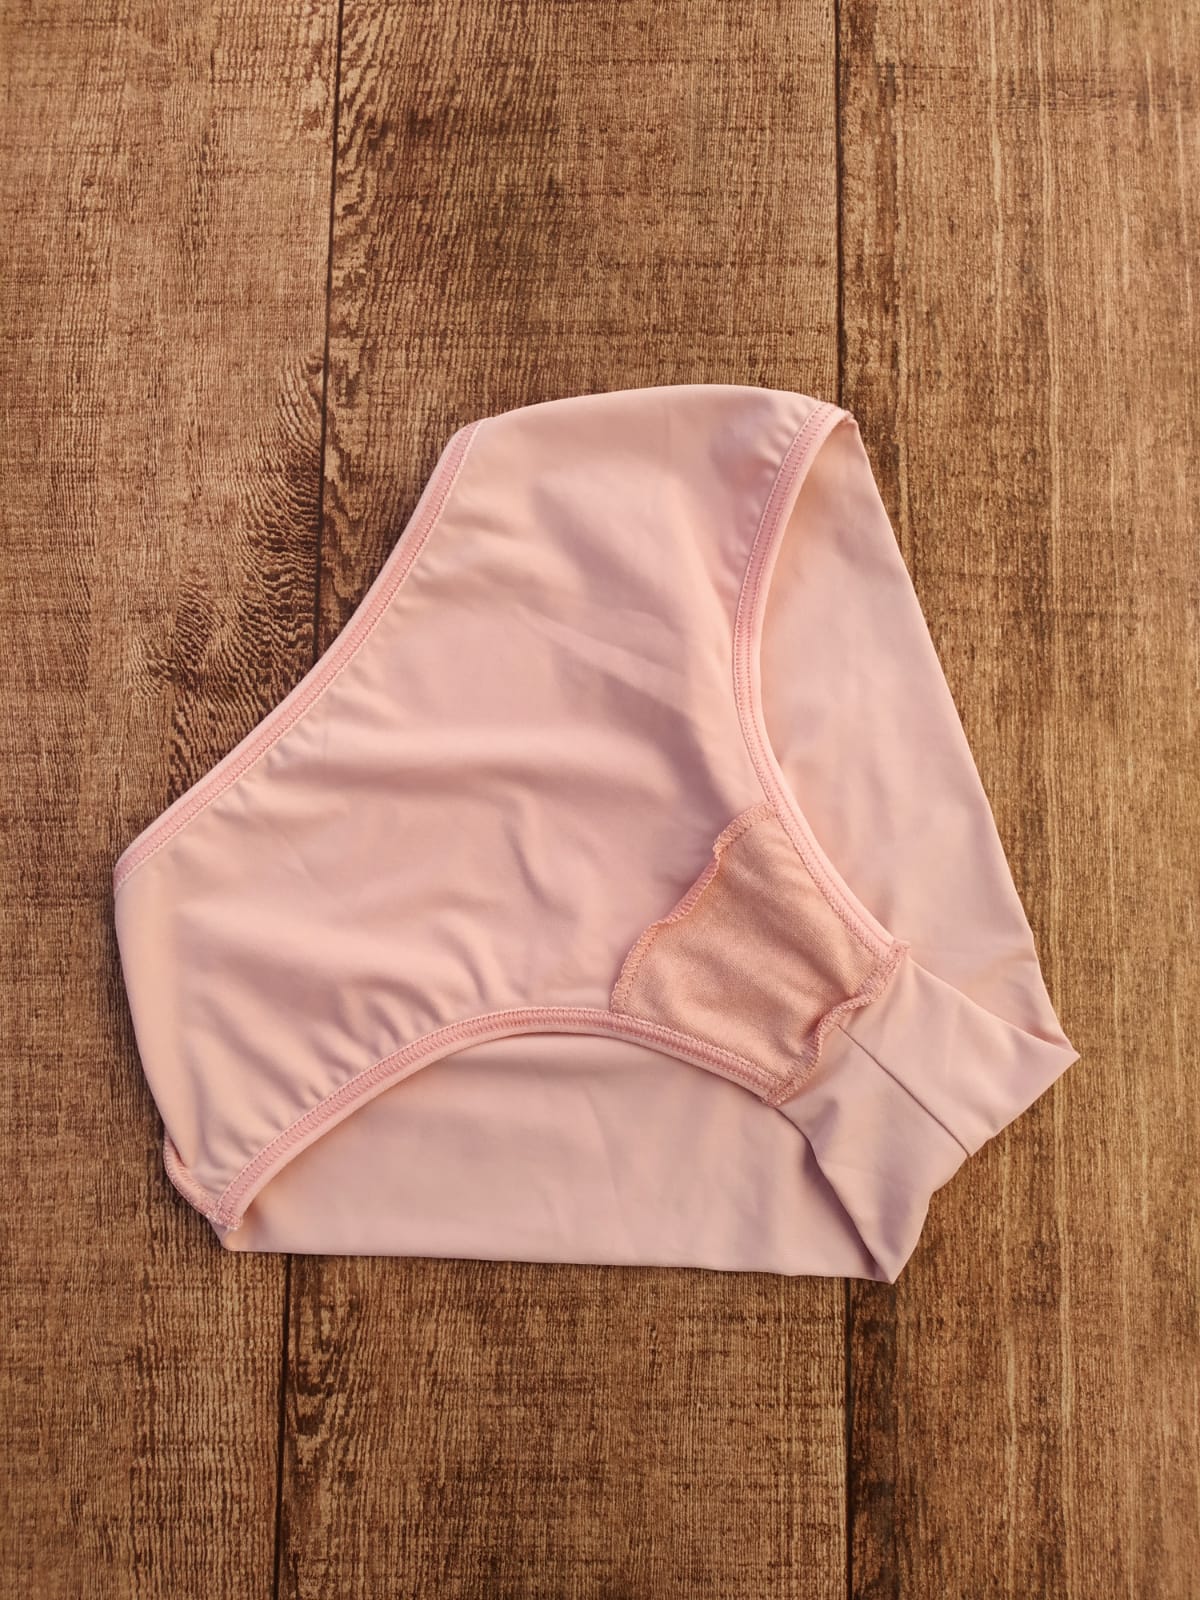 calcinha microfibra maçã lingerie atacado distribuidora de lingerie calcinha para revender barato scaled